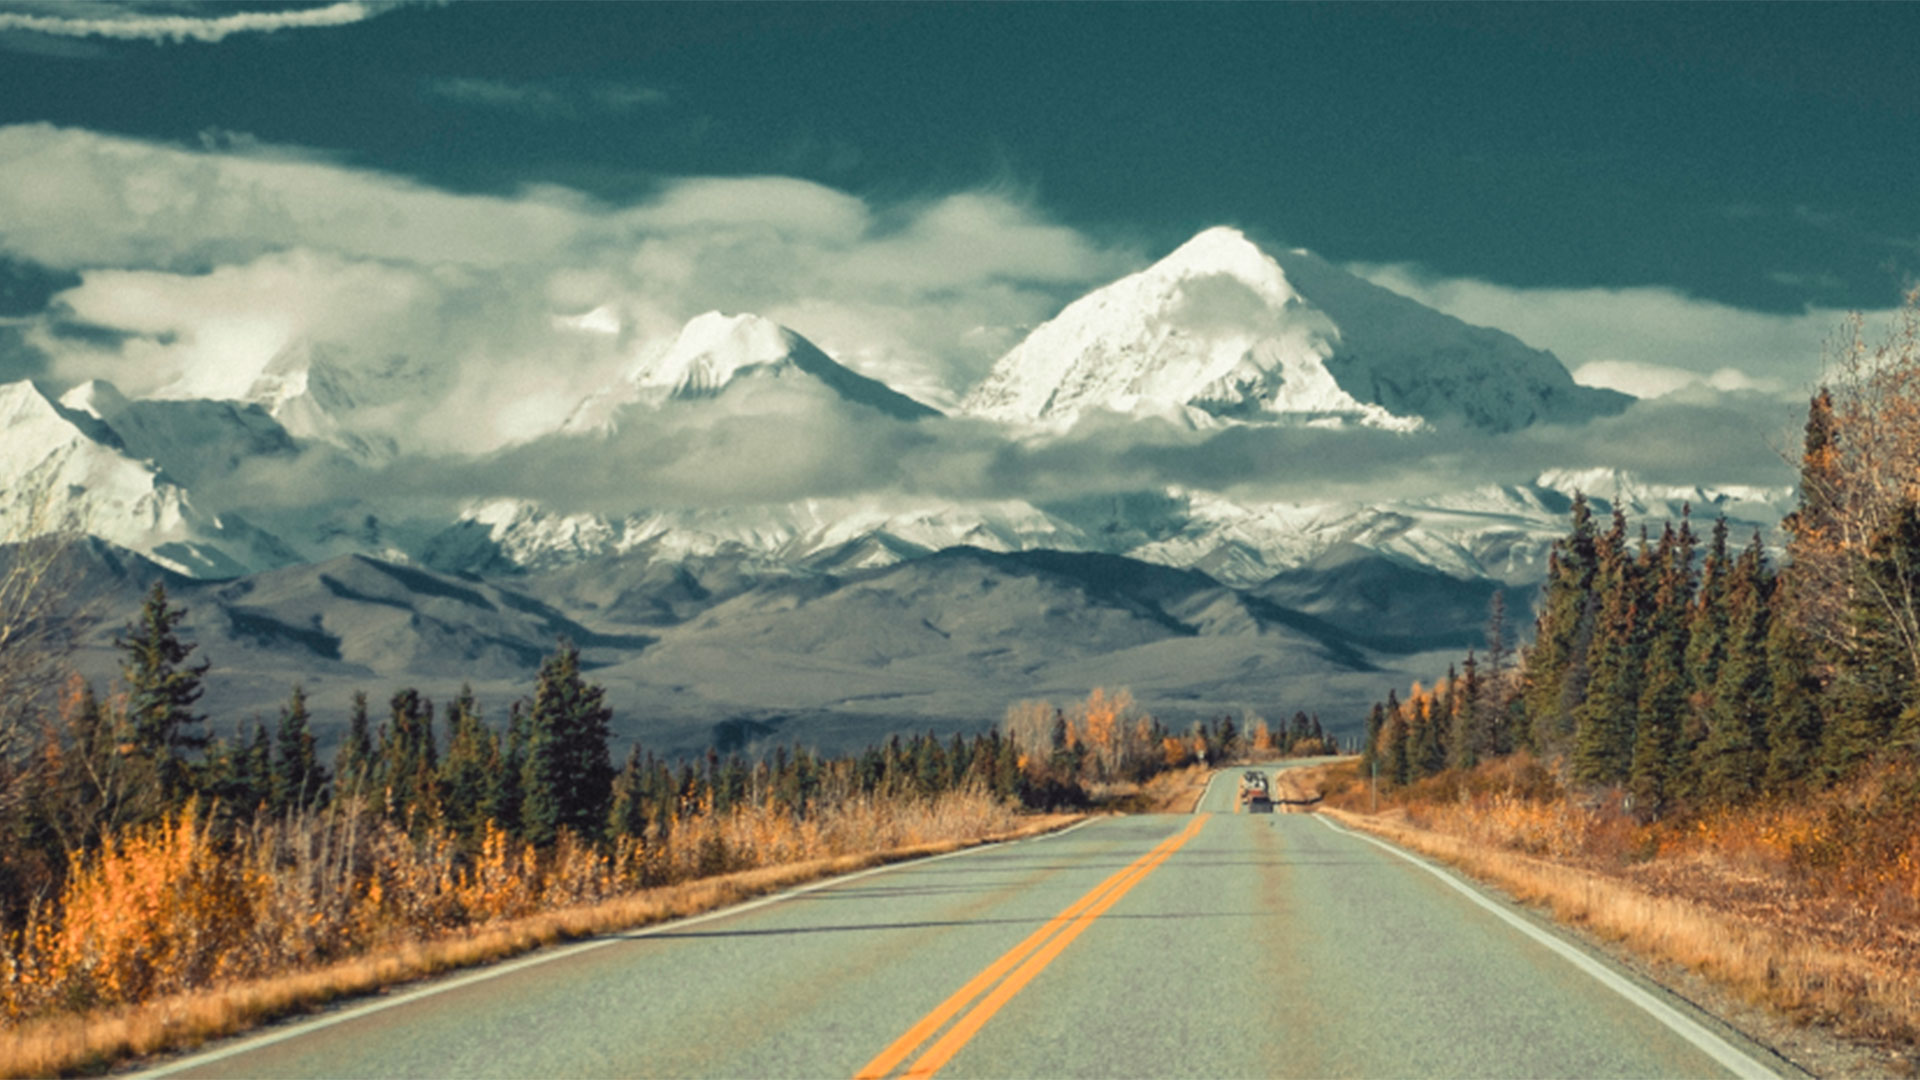 Mount Hayes es la montaña más alta de la cordillera oriental de Alaska y se especula que alberga numerosos extraterrestres y ovni (Foto: Oficina de Turismo de Alaska)